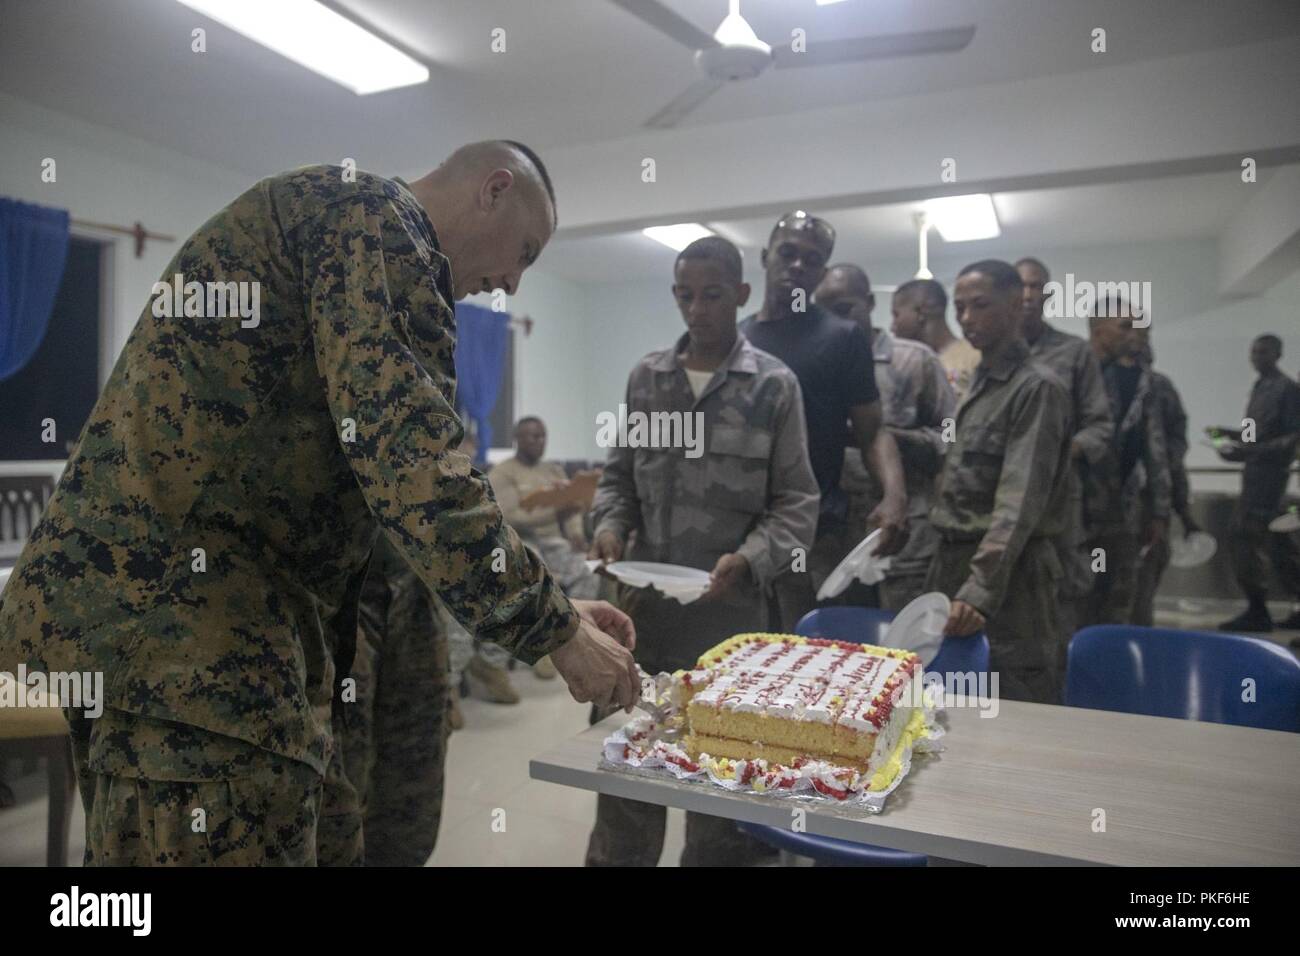 Le Sgt. Le Major Adam Sheinkin, le Groupe de travail air-sol marin - sergent-major de commandement sud, coupe un gâteau pour Marines avec SPMAGTF-SC's Mobile Training Team 1 et leurs élèves dans l'infanterie de marine de la République dominicaine au cours d'un dîner du "guerrier" après un 10-mile randonnée dans la région de Las Calderas, la République dominicaine, le 2 août 2018. La randonnée a fait partie de l'infanterie avance bien sûr des compétences enseignées par les Marines aux dominicains. Les Marines et les marins d'SPMAGTF-SC mènent la coopération de sécurité et de formation projets d'ingénierie avec des forces militaires de la nation en Europe centrale et du Sud Banque D'Images